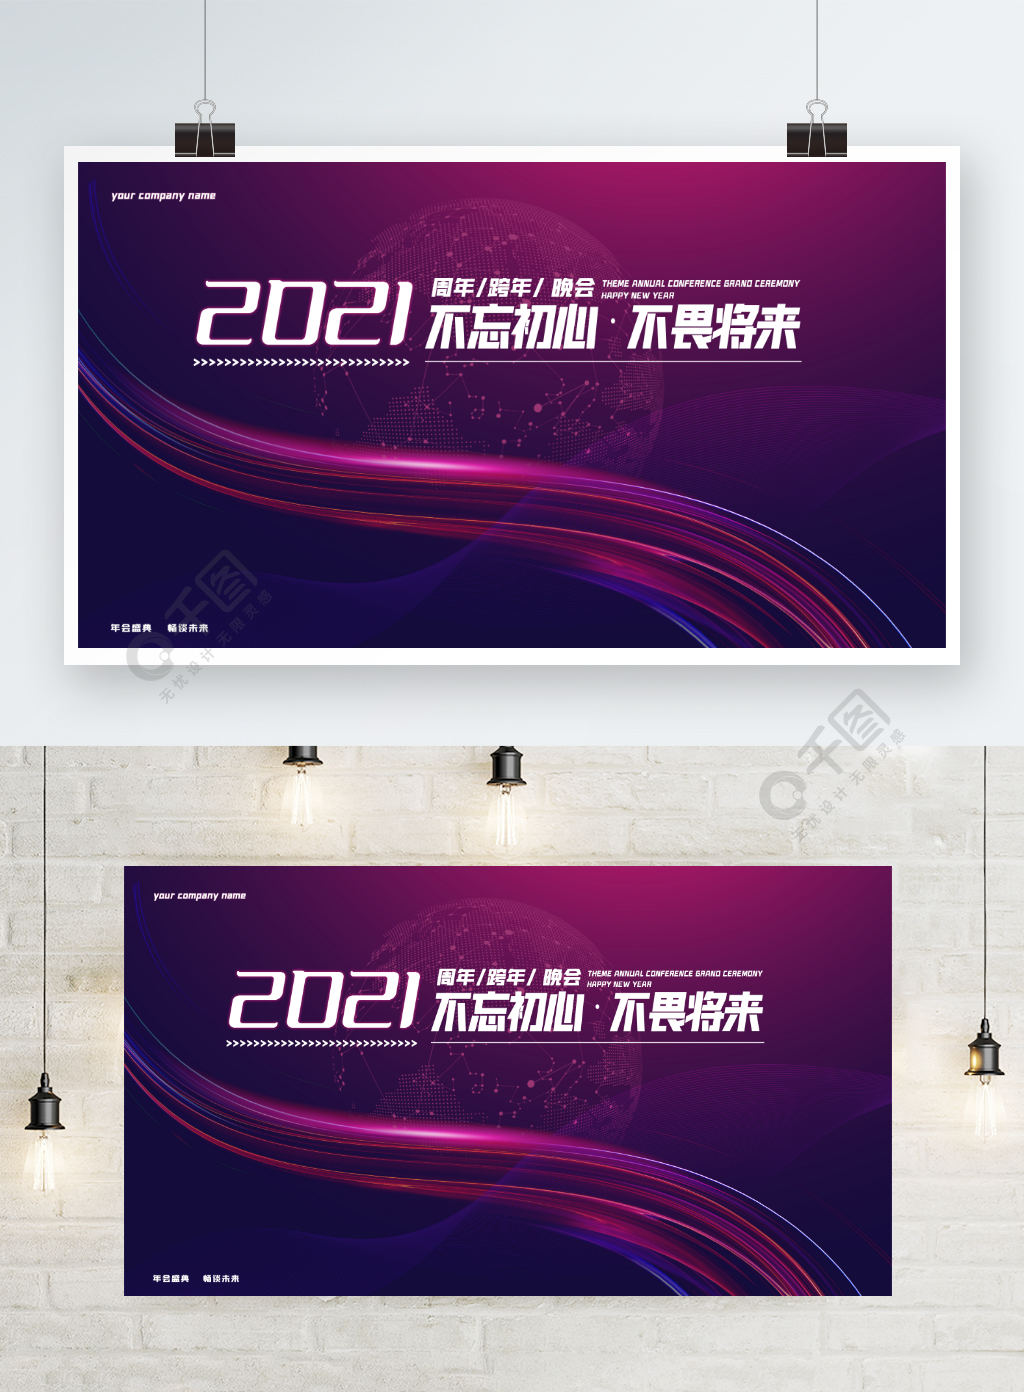 时尚炫彩2021主题年会签到墙活动海报半年前发布